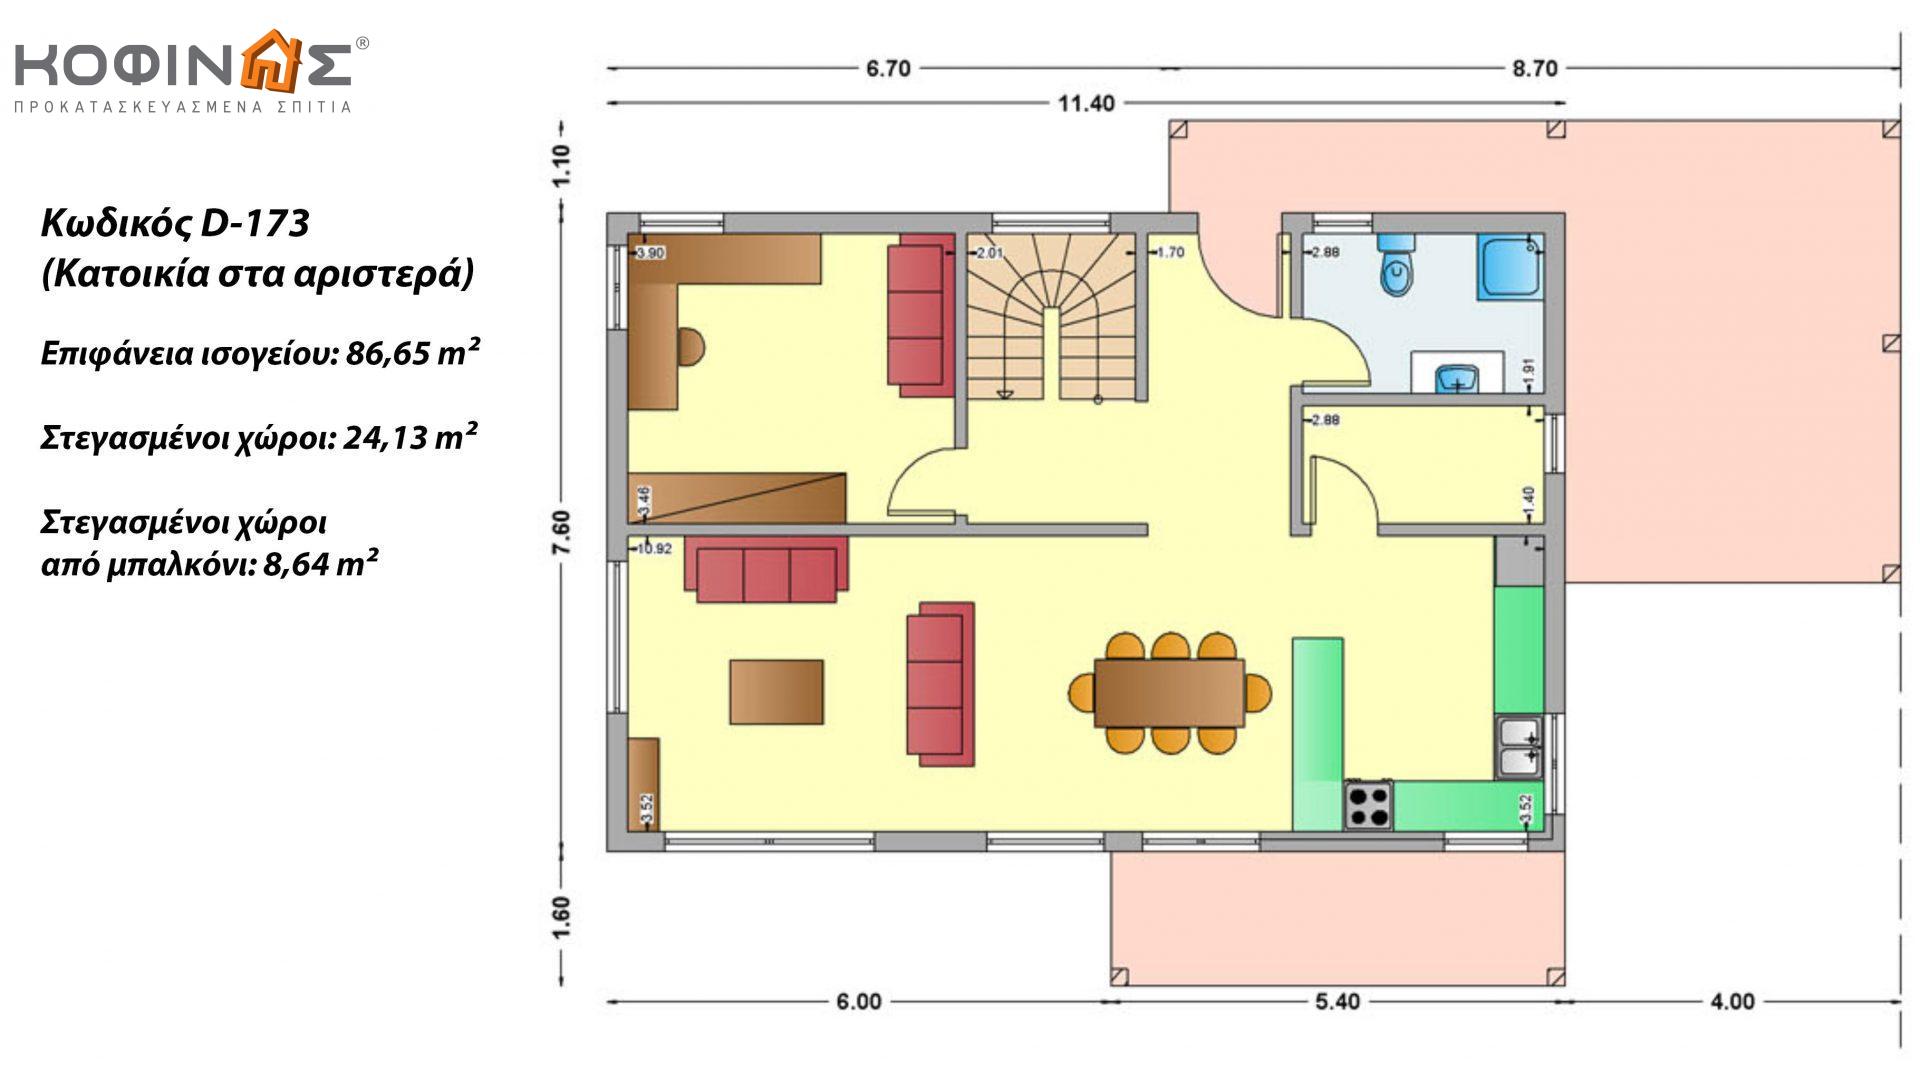 Διώροφη Κατοικία D-173, συνολικής επιφάνειας 173,30 τ.μ., συνολική επιφάνεια στεγασμένων χώρων 32.77 τ.μ., μπαλκόνι 8.64 τ.μ.